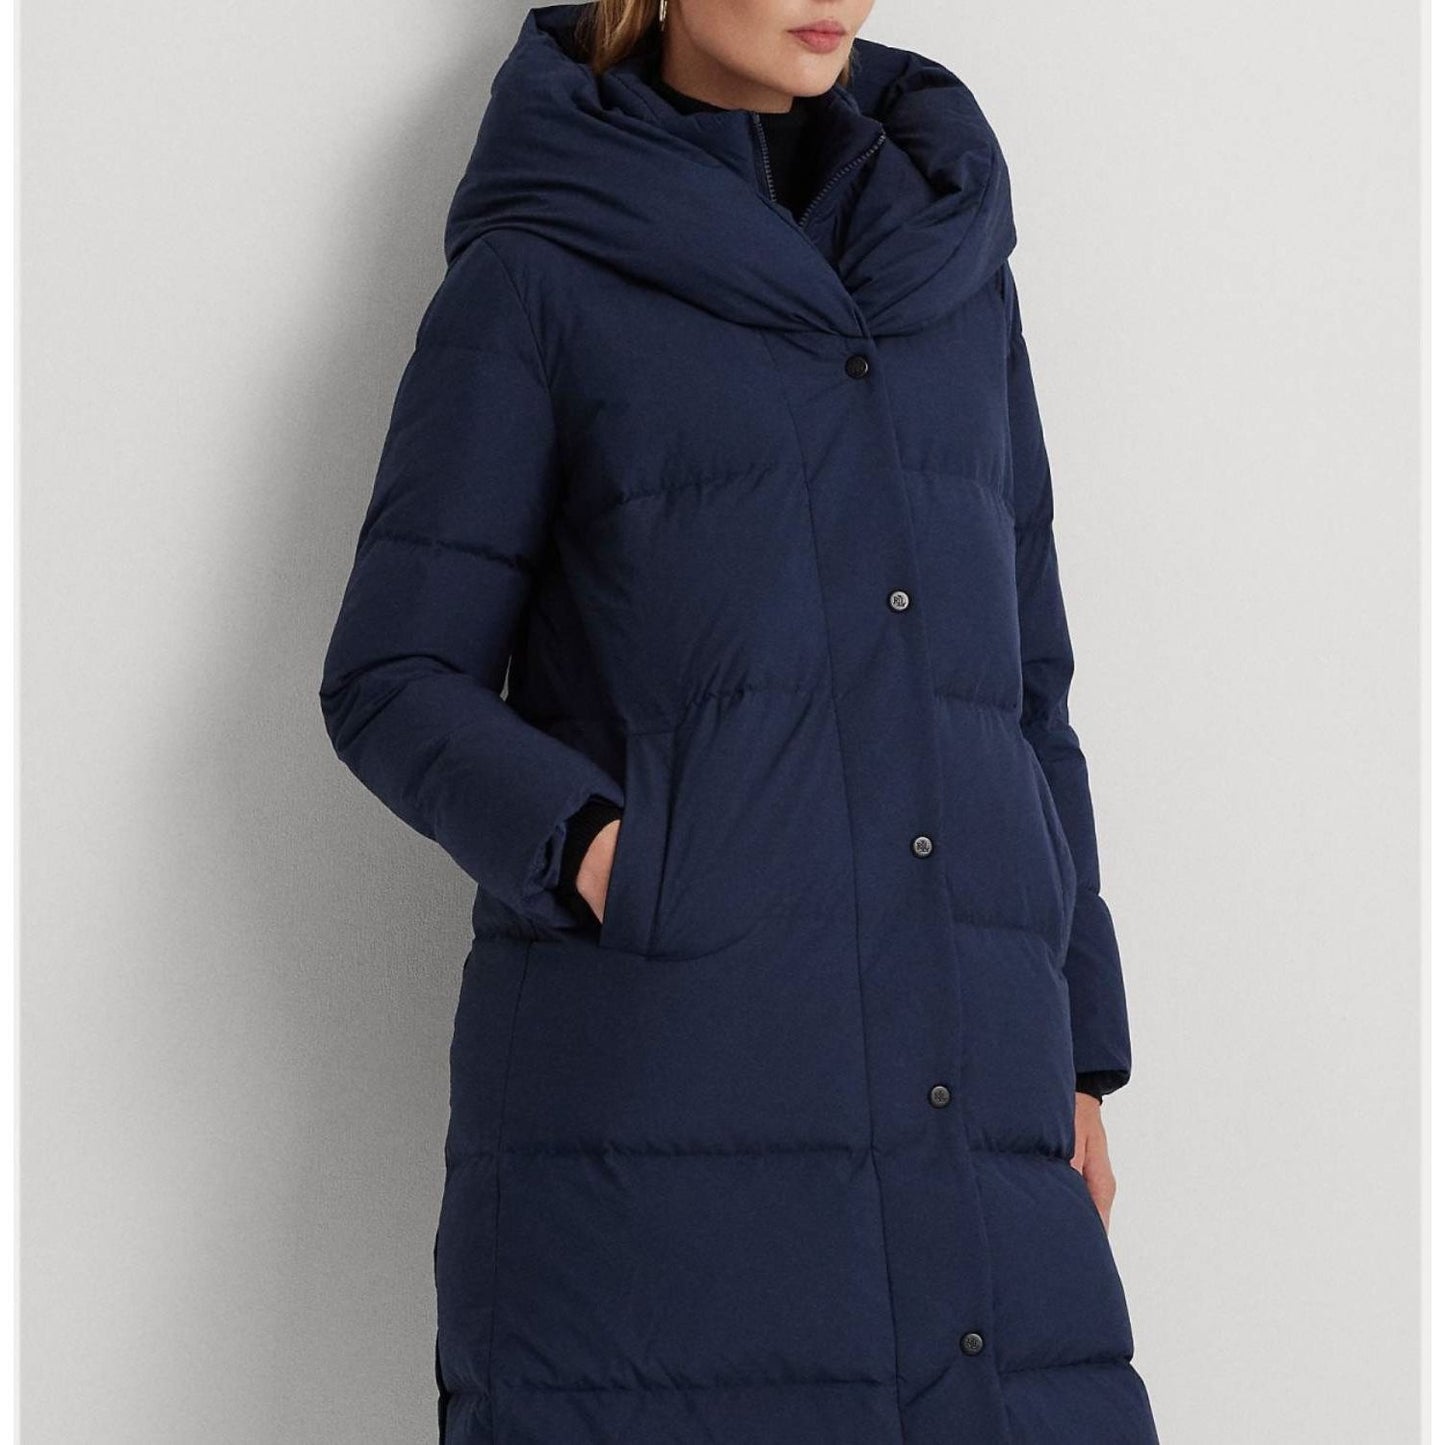 LAUREN RALPH LAUREN moteriškas mėlynas pūstas paltas Insulated coat